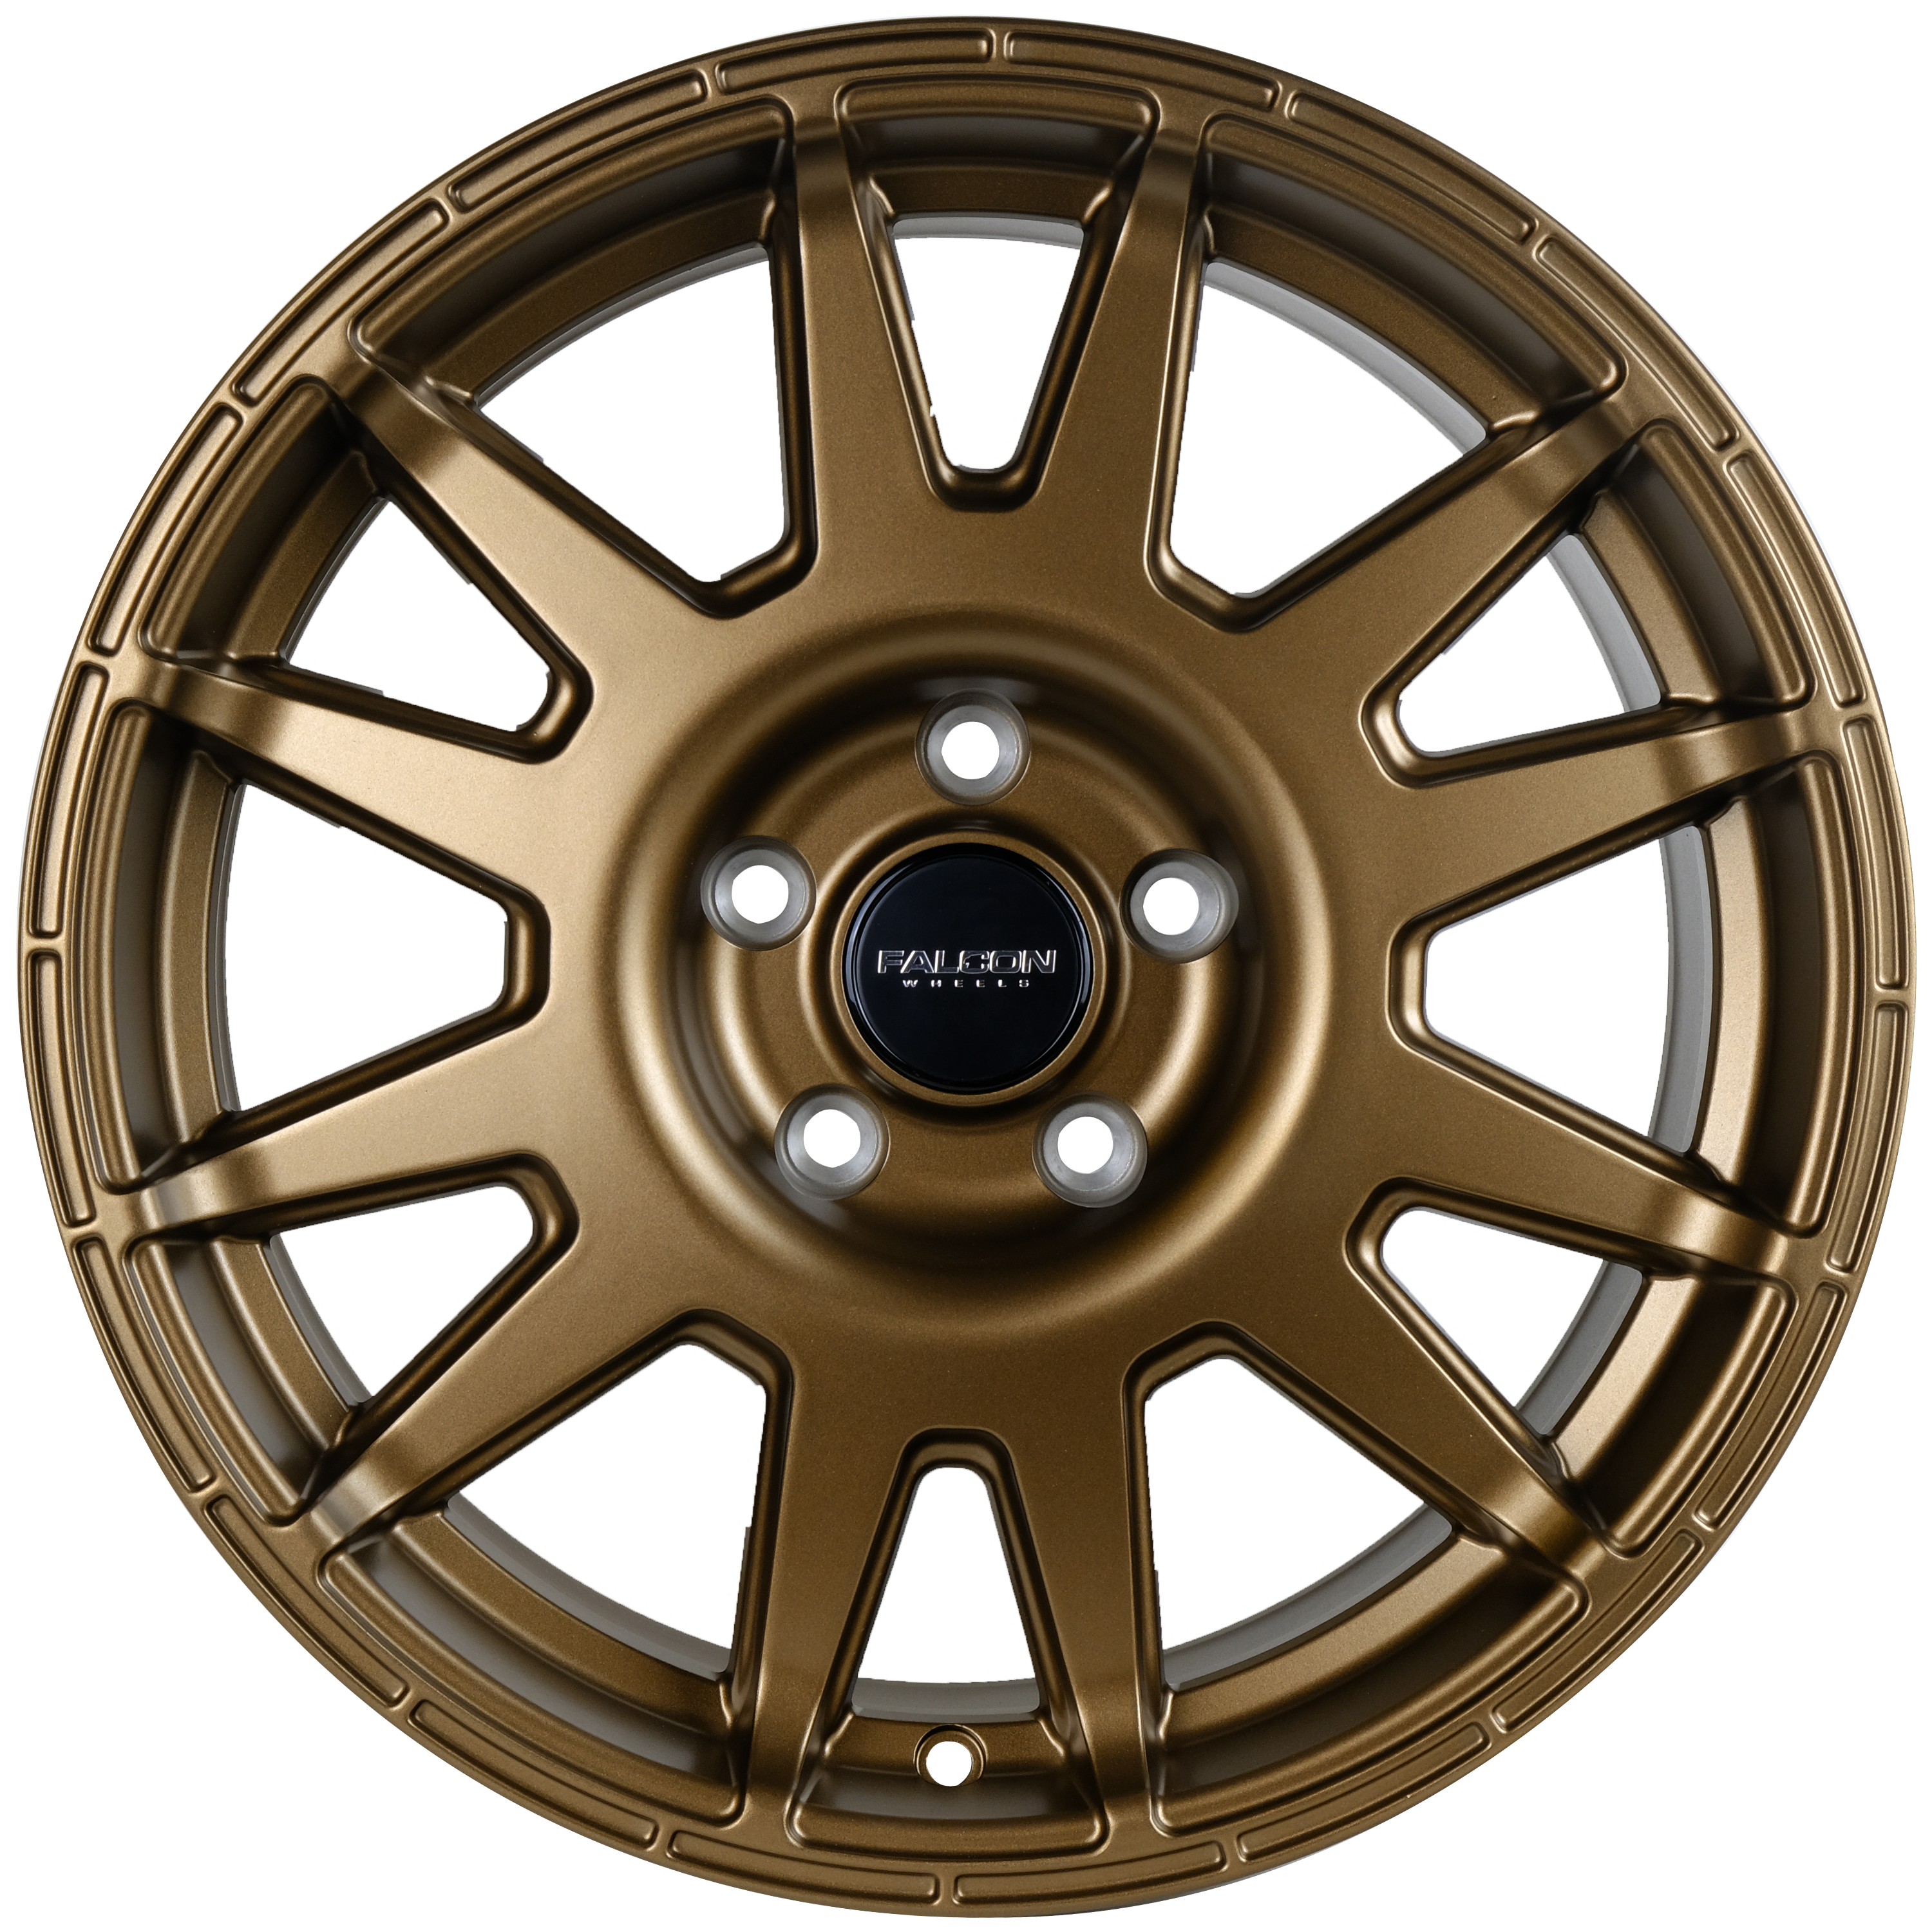 V2 - Matte Bronze 17x8 - Premium  from Falcon Off-Road Wheels - Just $240! Shop now at Falcon Off-Road Wheels 